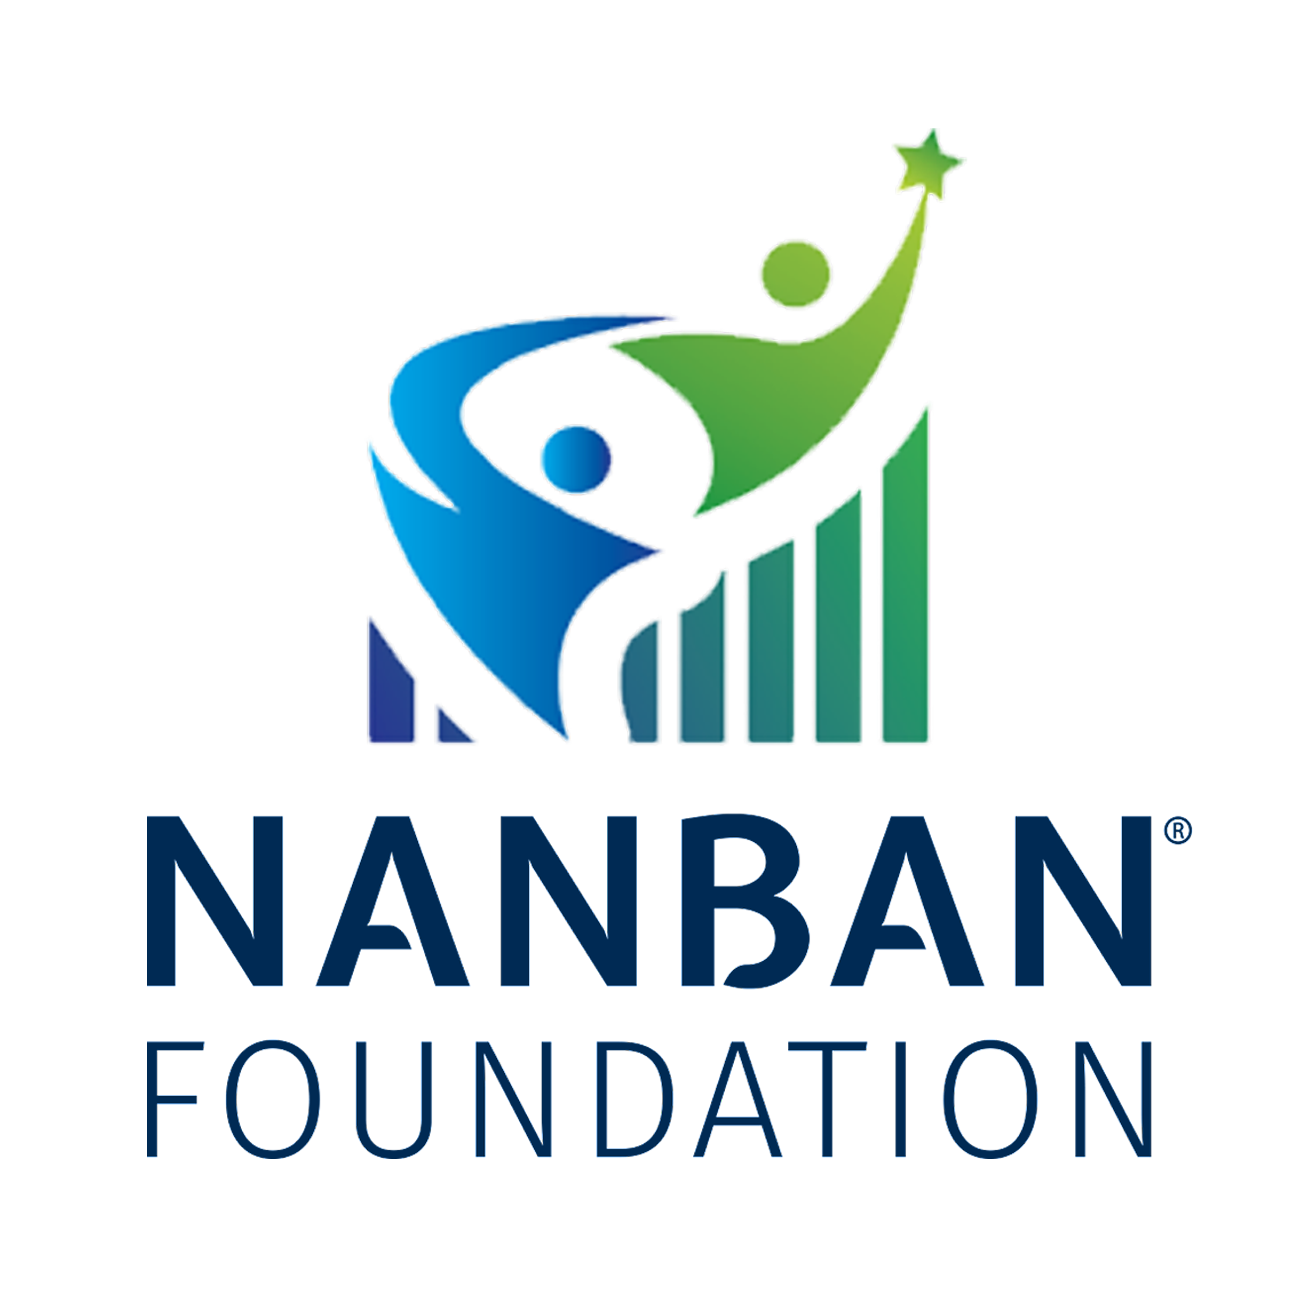 Nanban Foundation